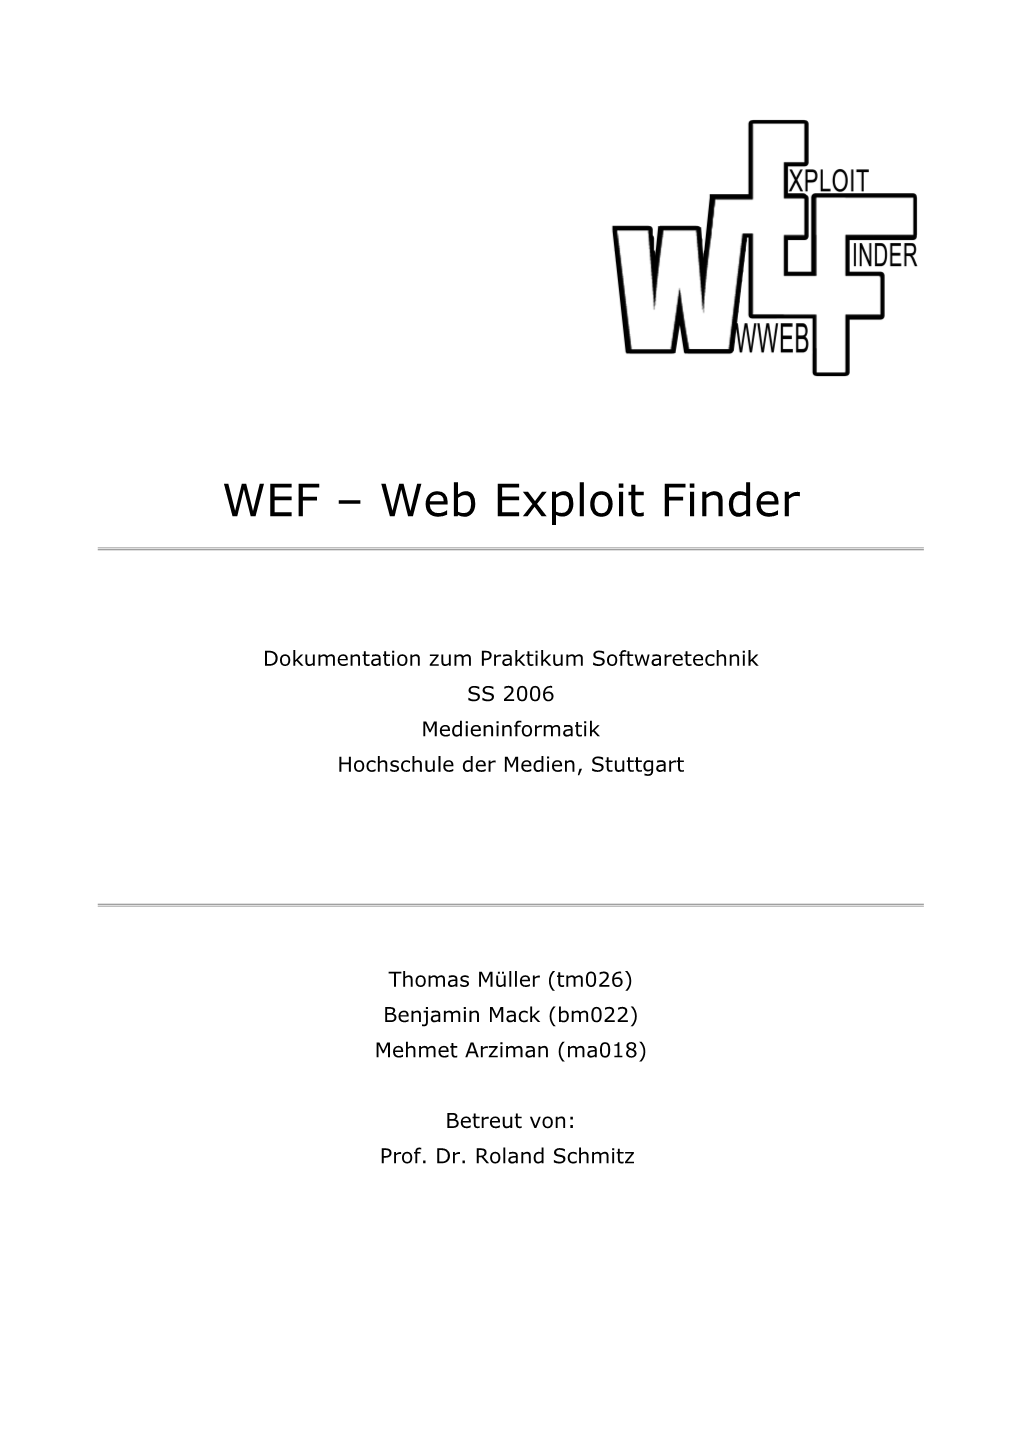 Web Exploit Finder